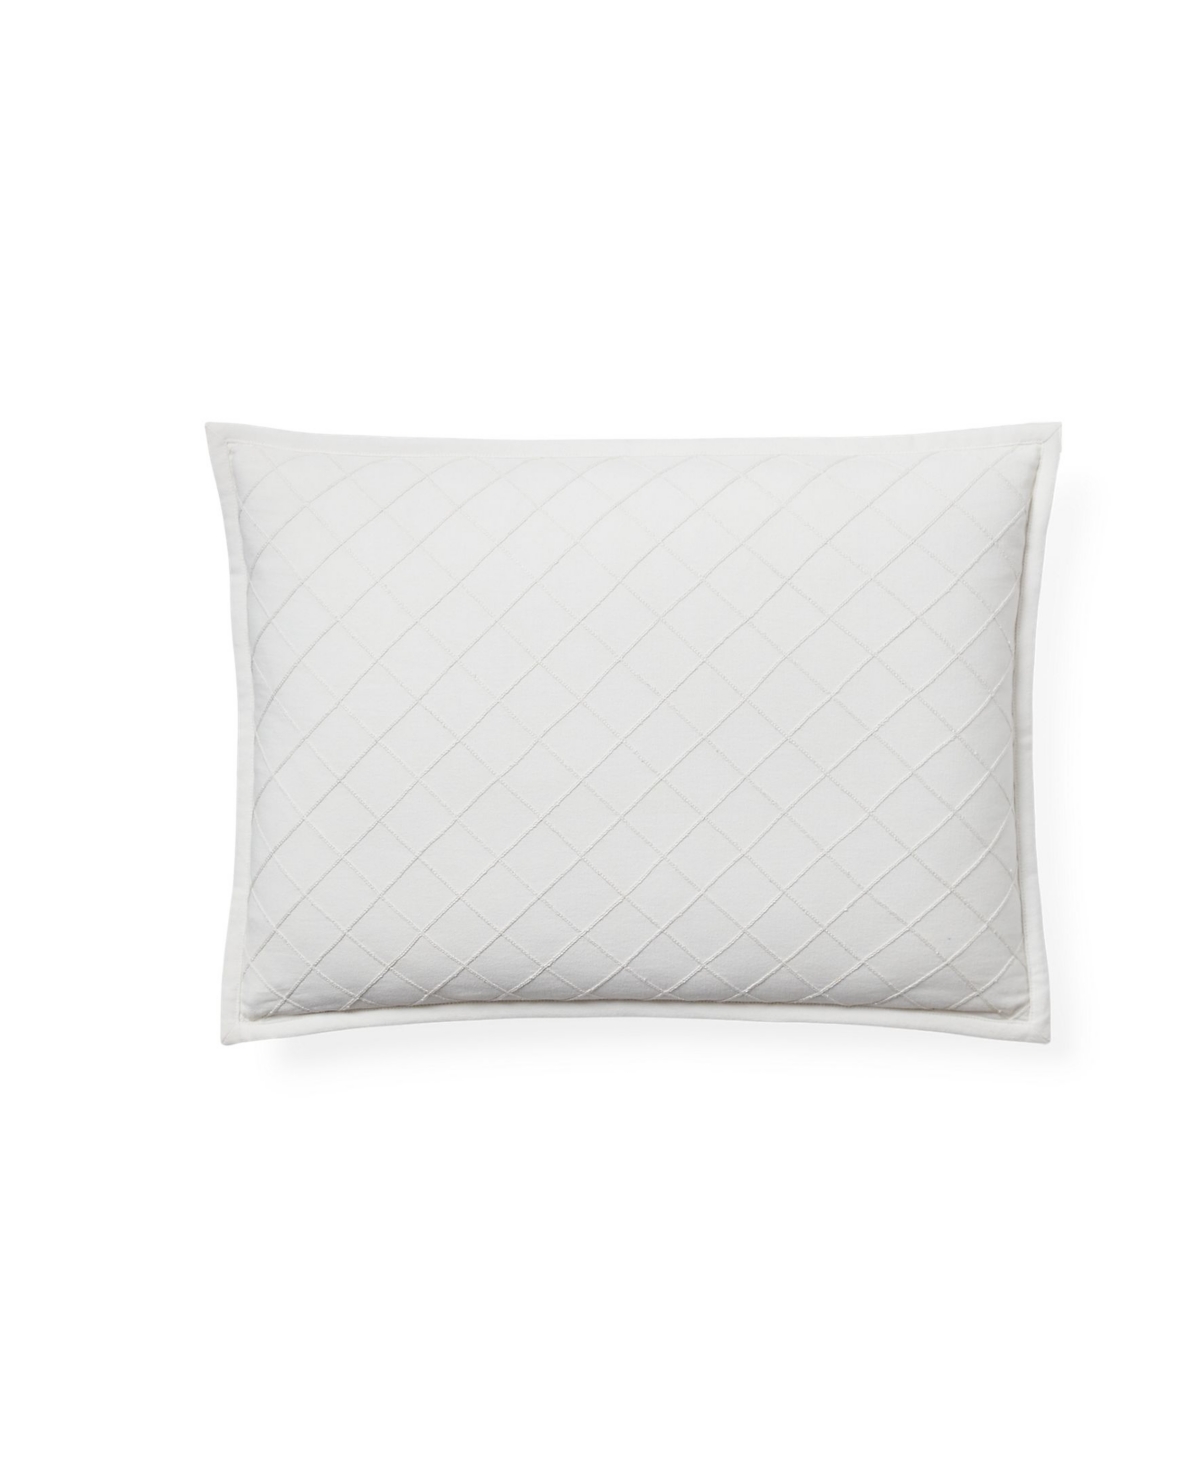 Lauren Ralph Lauren Lattice Embroidery Throw Pillow, 15" X 20" In Cream